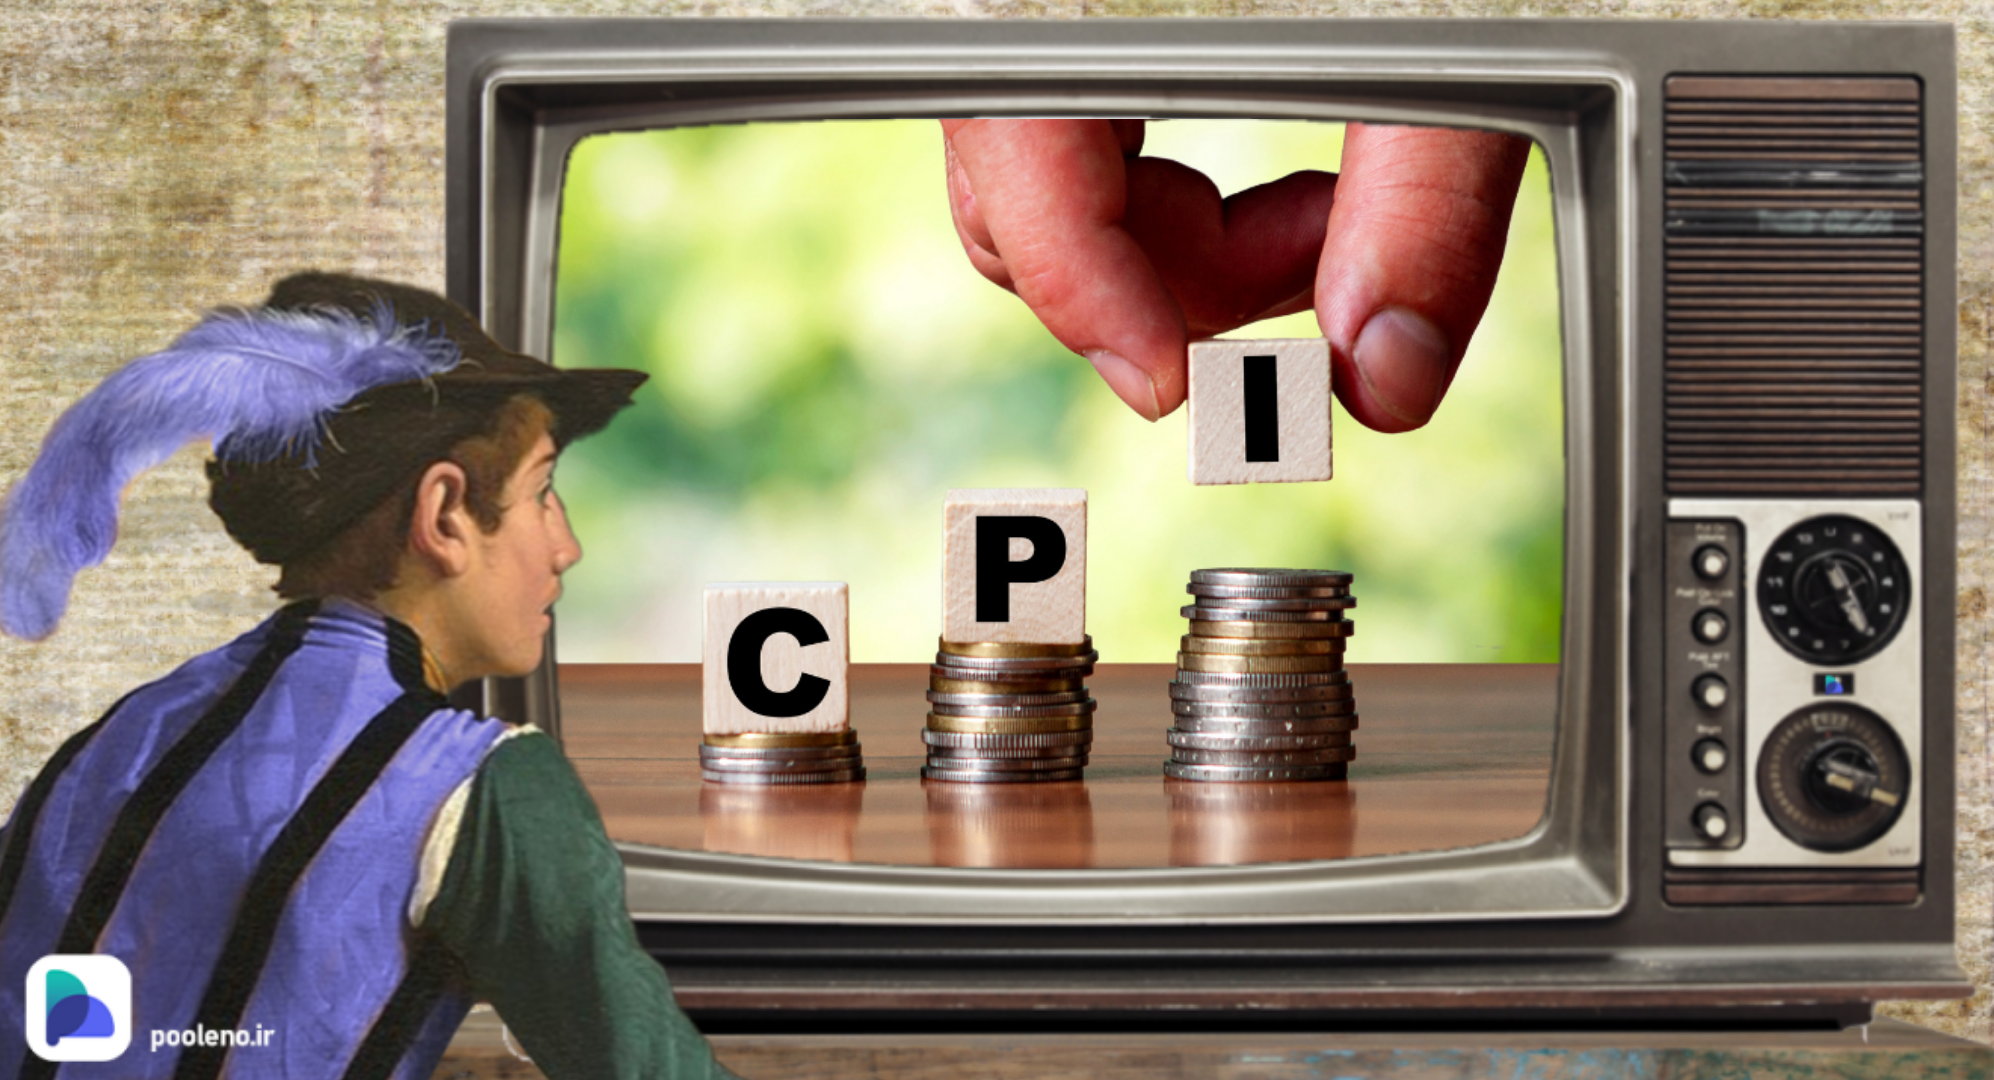 اعلام رقم جدید CPI در روز پنجشنبه؛ انتظار چه چیزی را باید داشت؟